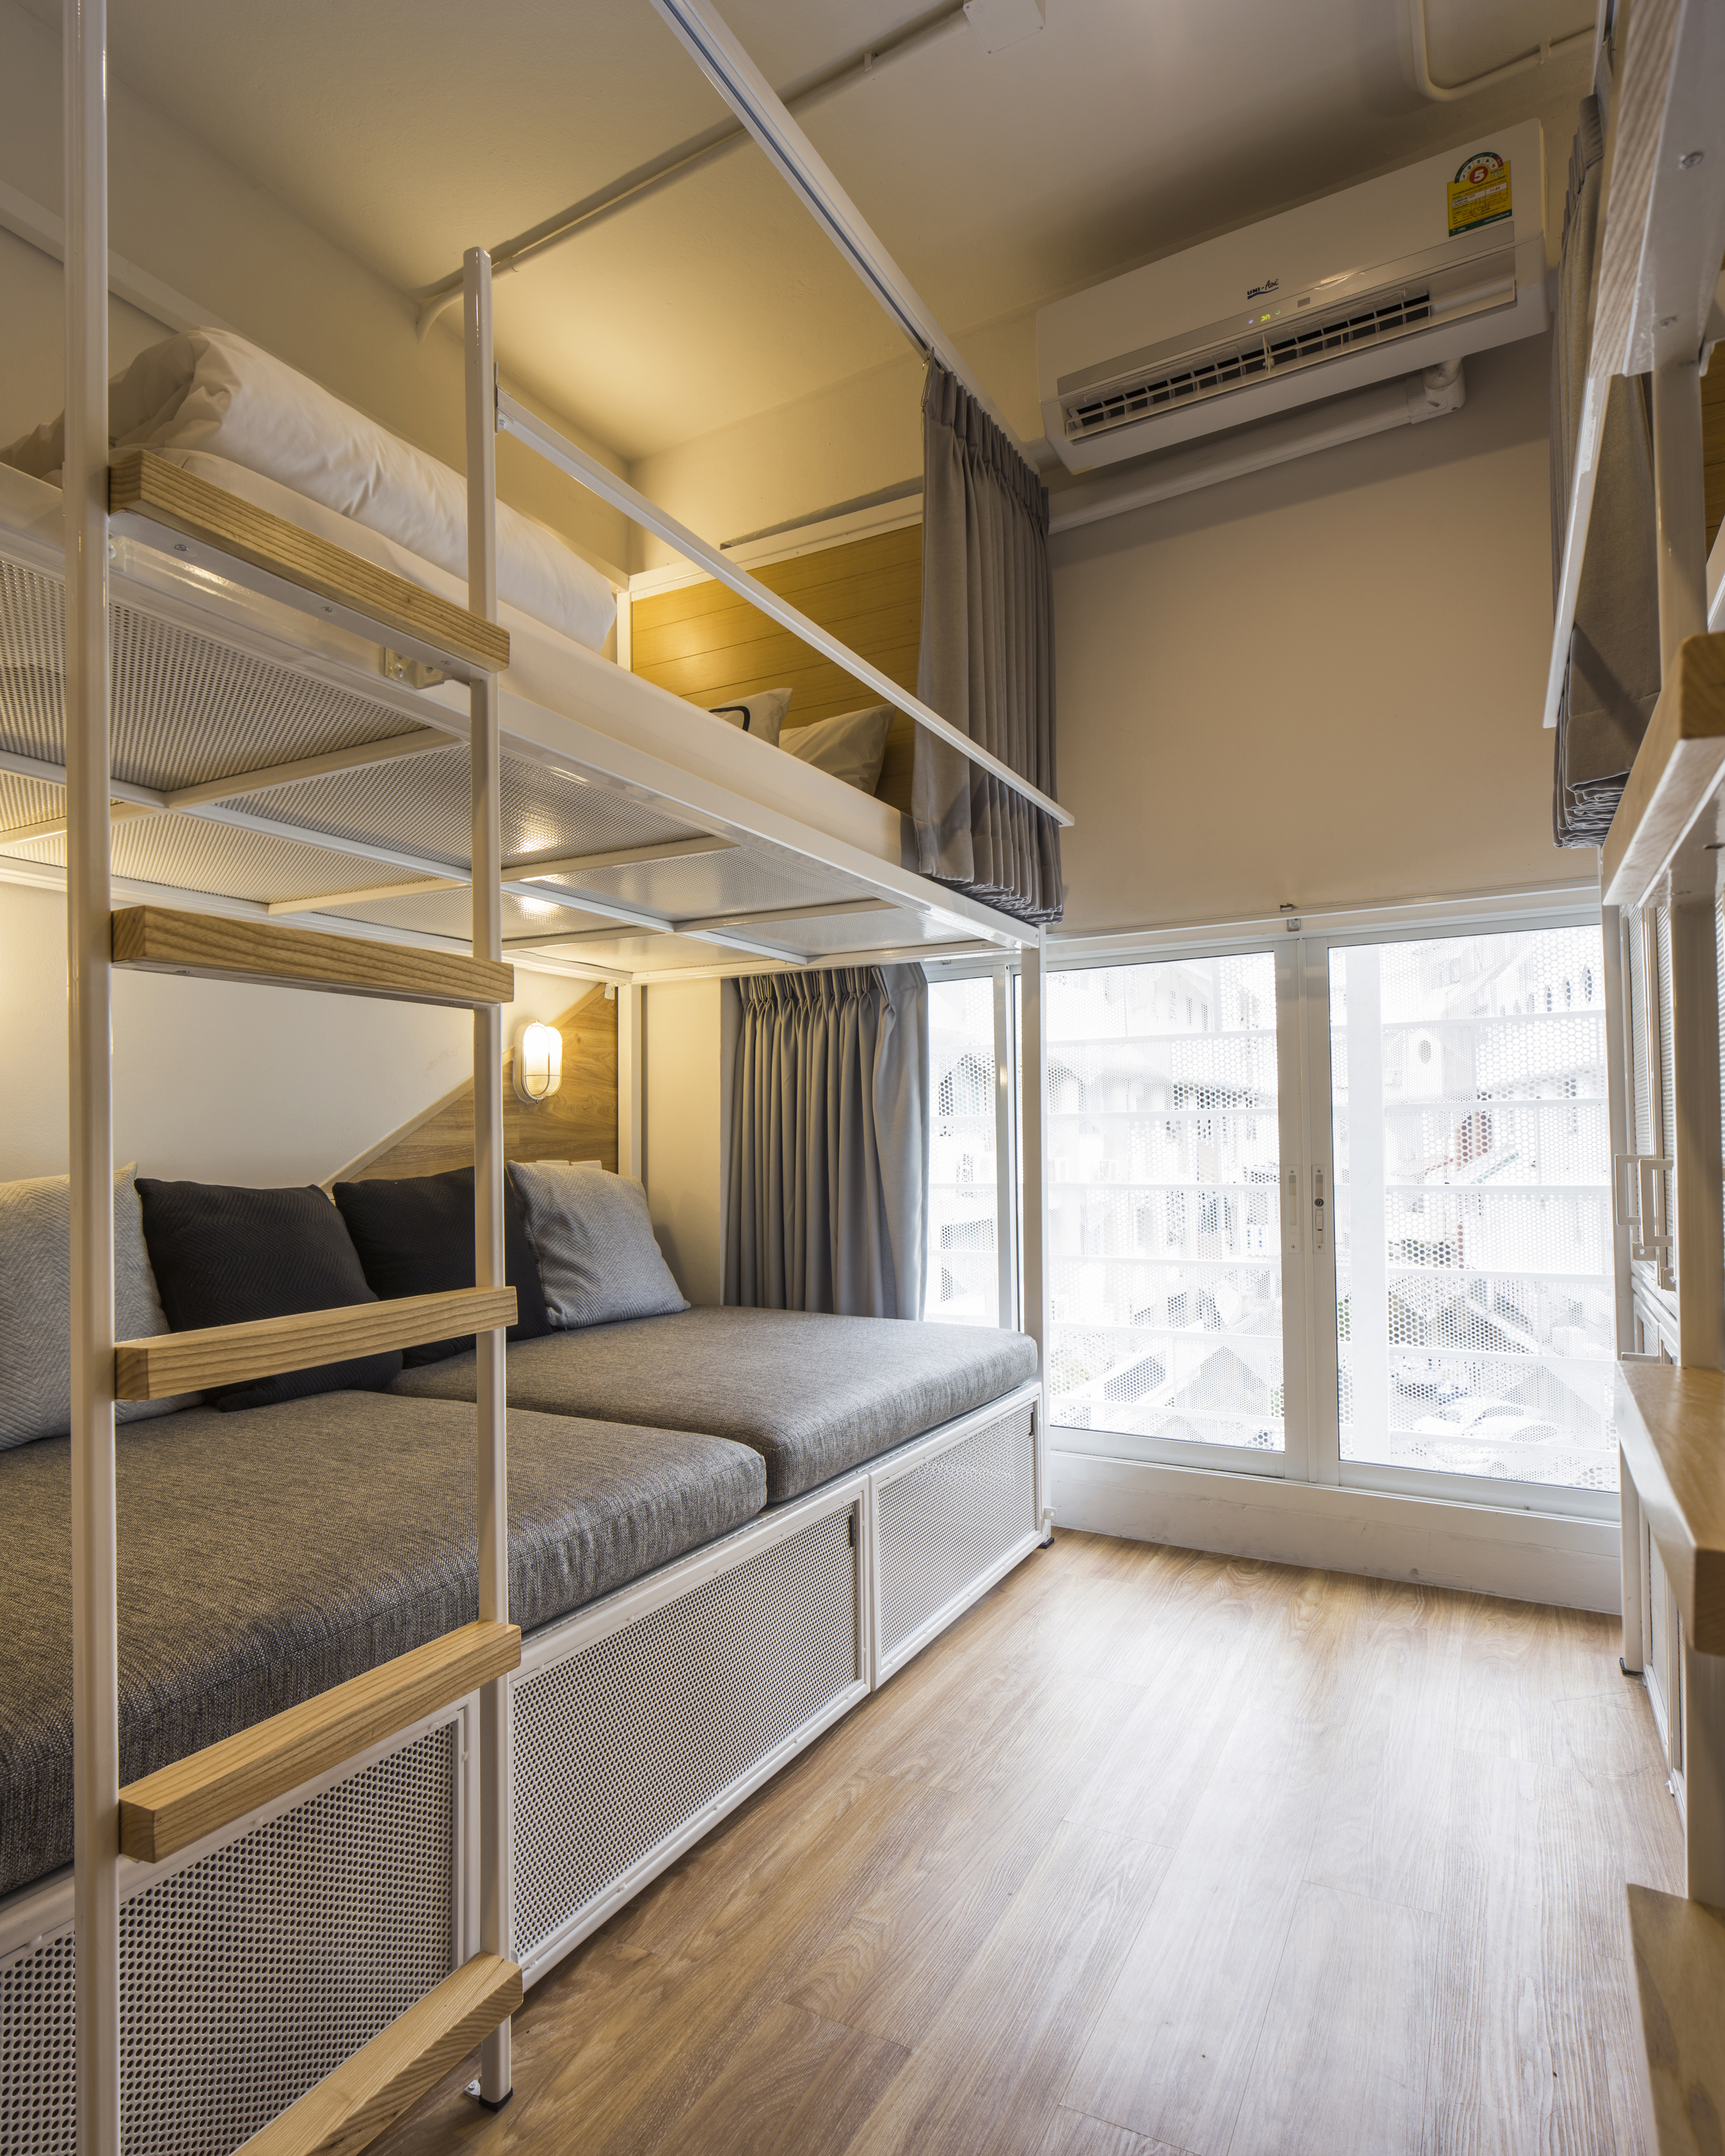 Двухэтажное общежитие. Двухэтажная комната. Кровати для хостела. Кровать двухъярусная хостел. Двухъярусная кровать для хостела.